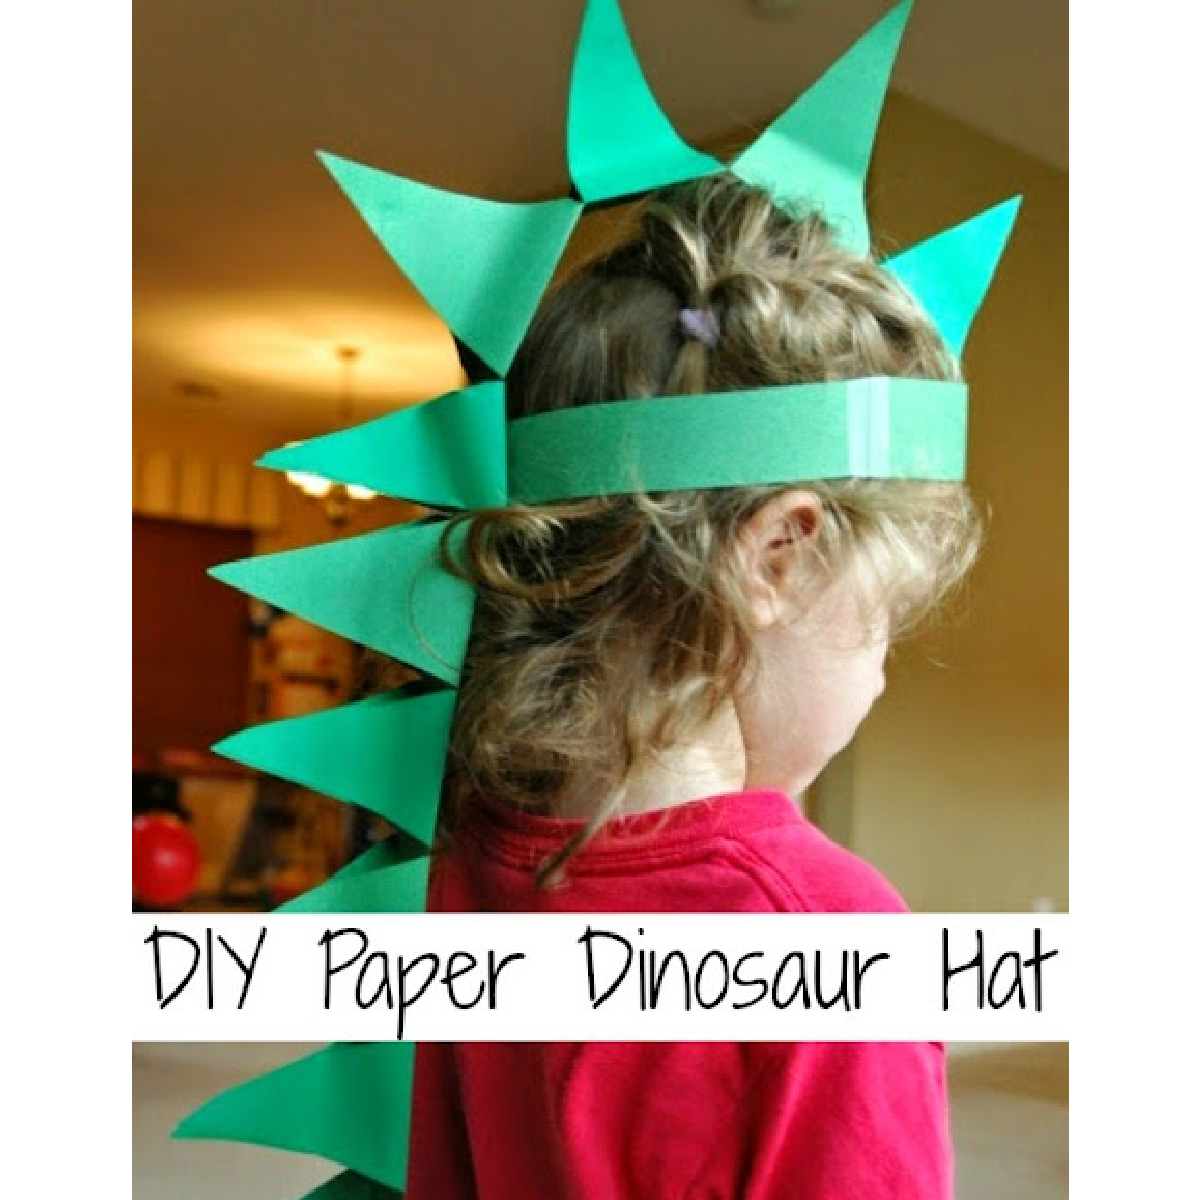 Dress up ideas- green dinosaur hat worn by little girl- kids activities blog